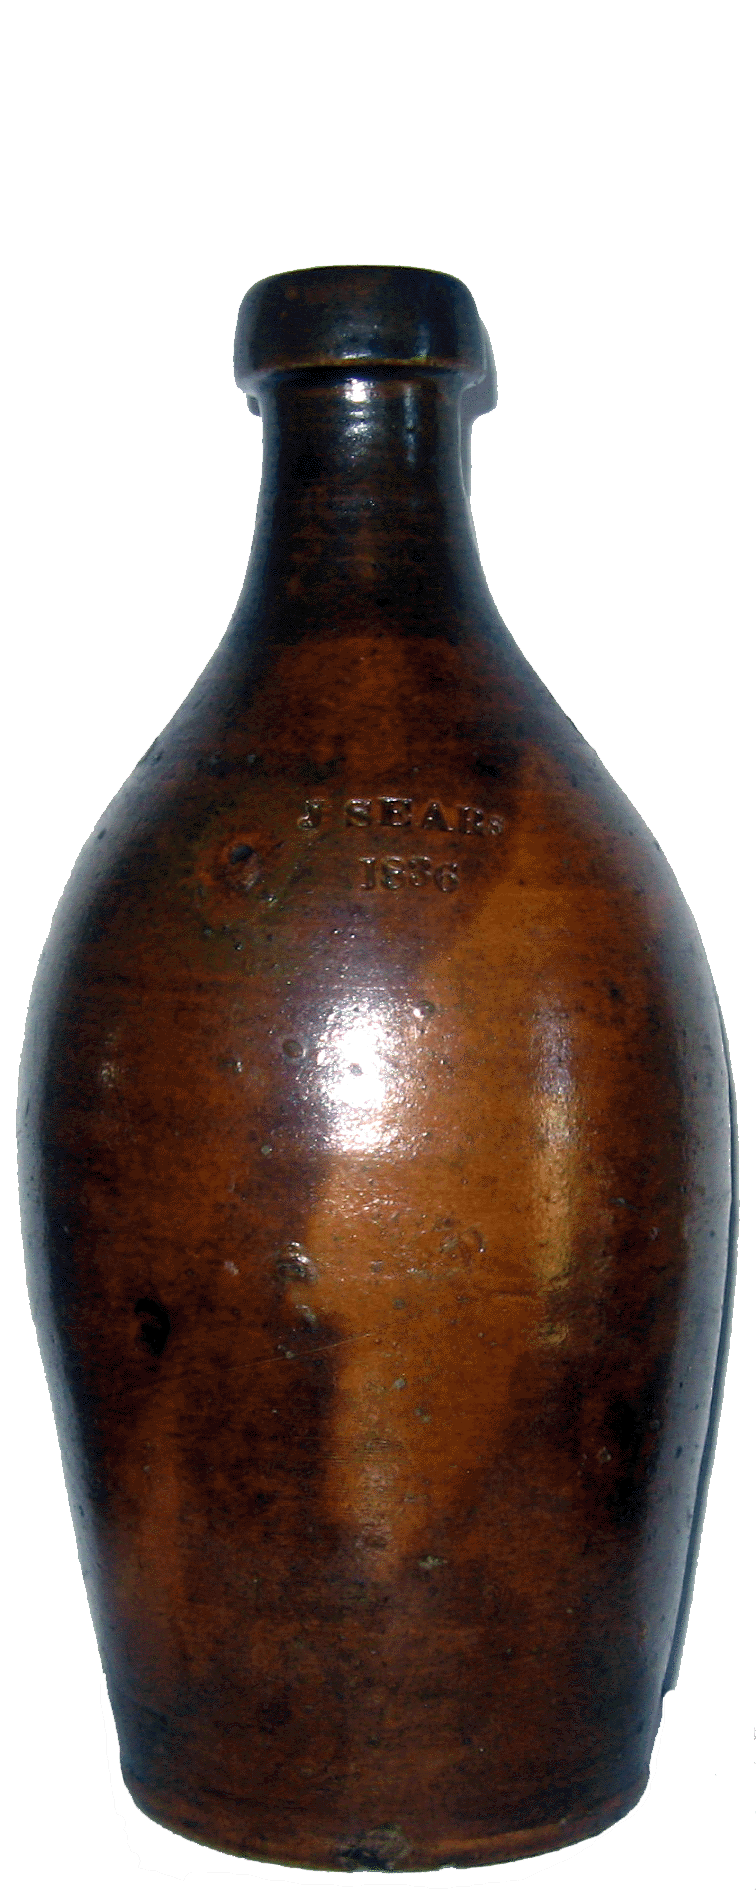 J. Sears 1836 Pottery Bottle